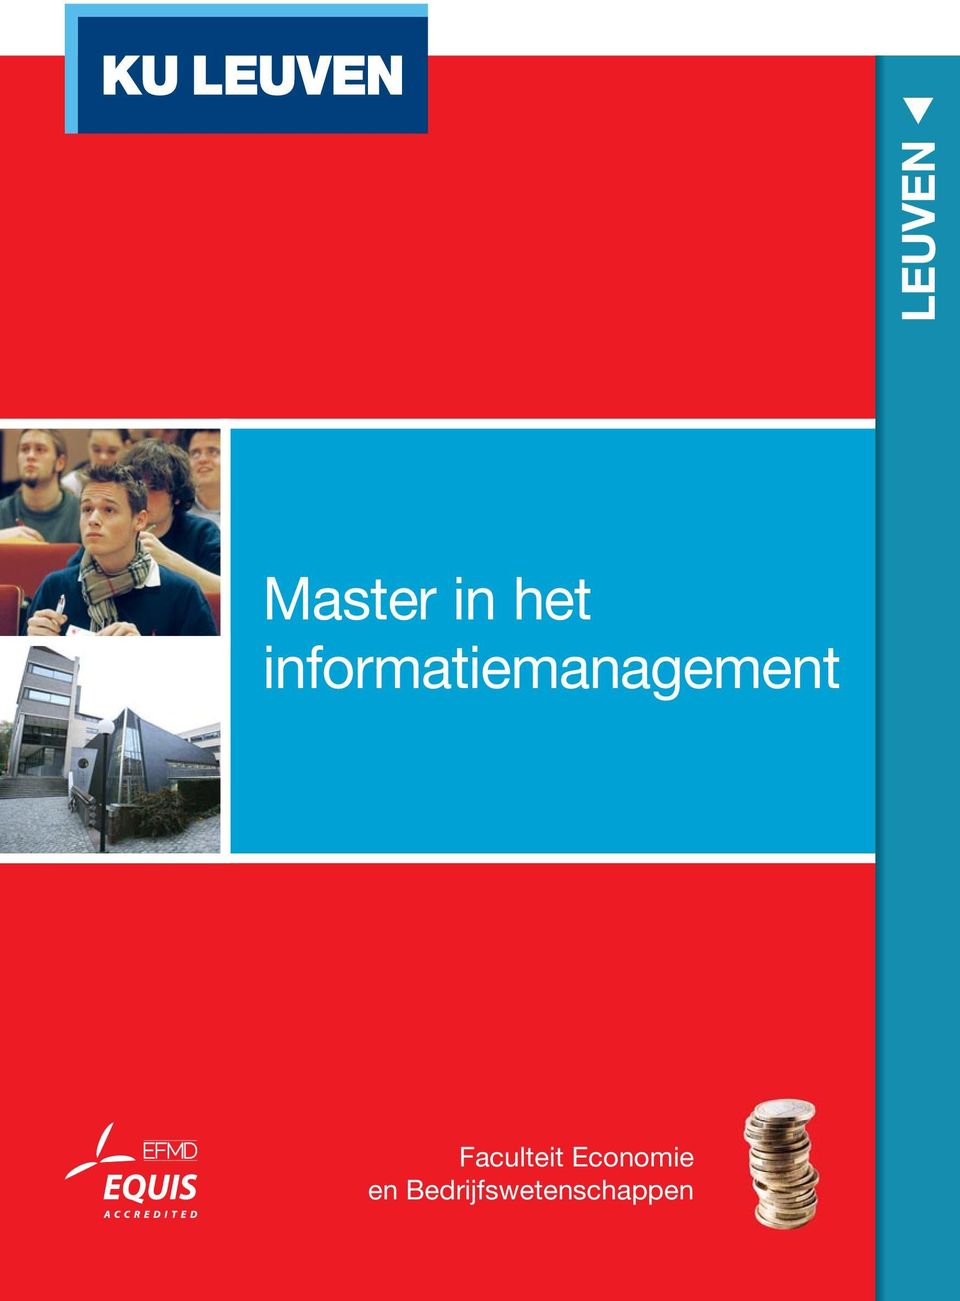 informatiemanagement